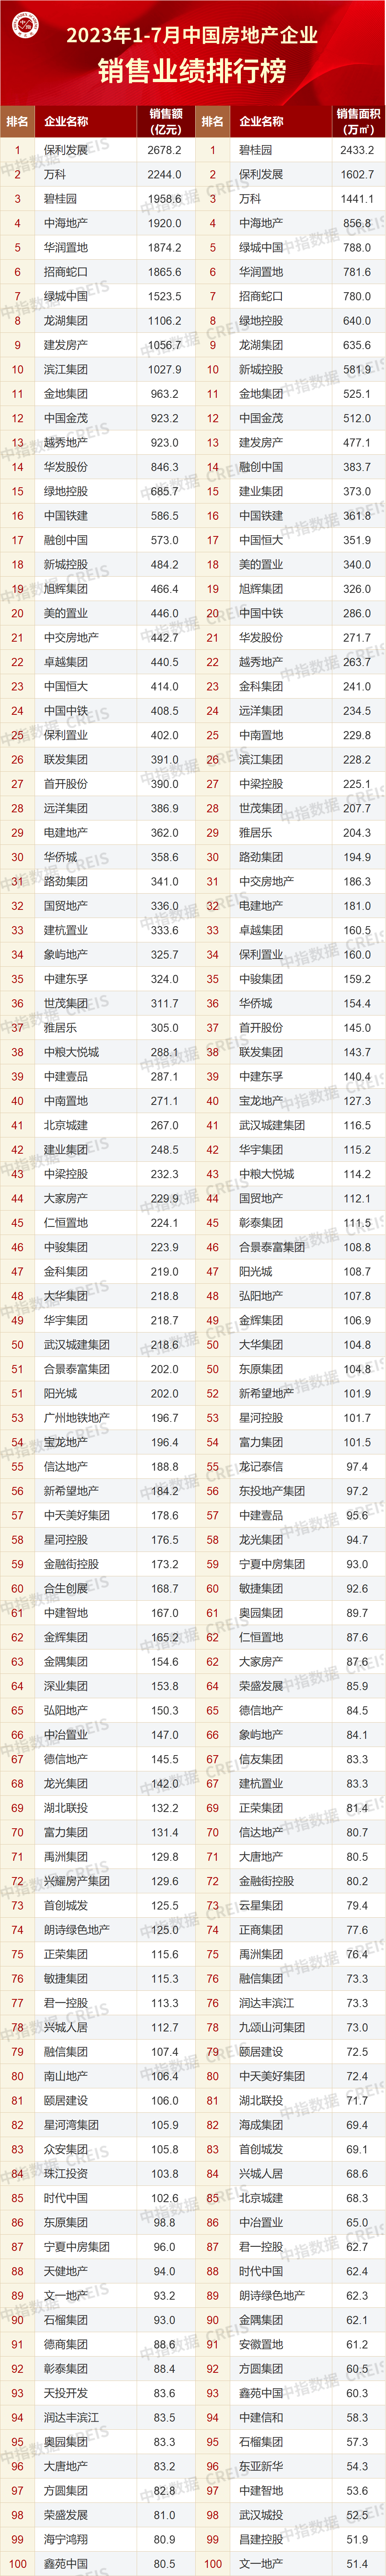 房地产销售排行_2023年1-7月中国房地产企业销售TOP100排行榜